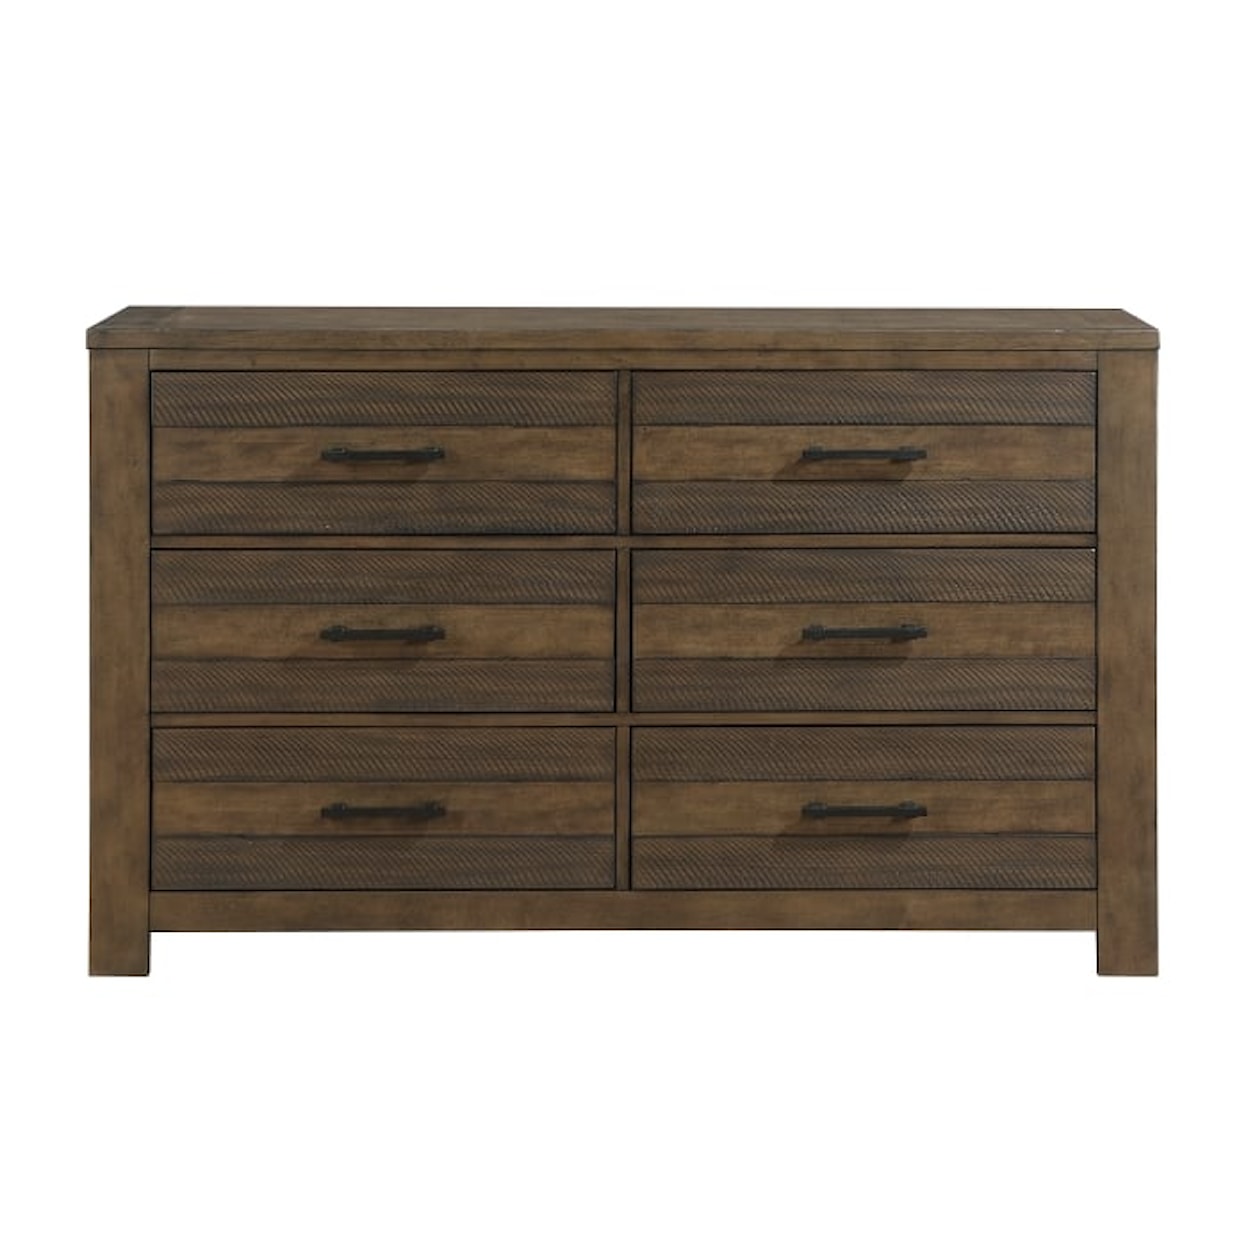 Homelegance Furniture Conway 6-Drawer Dresser